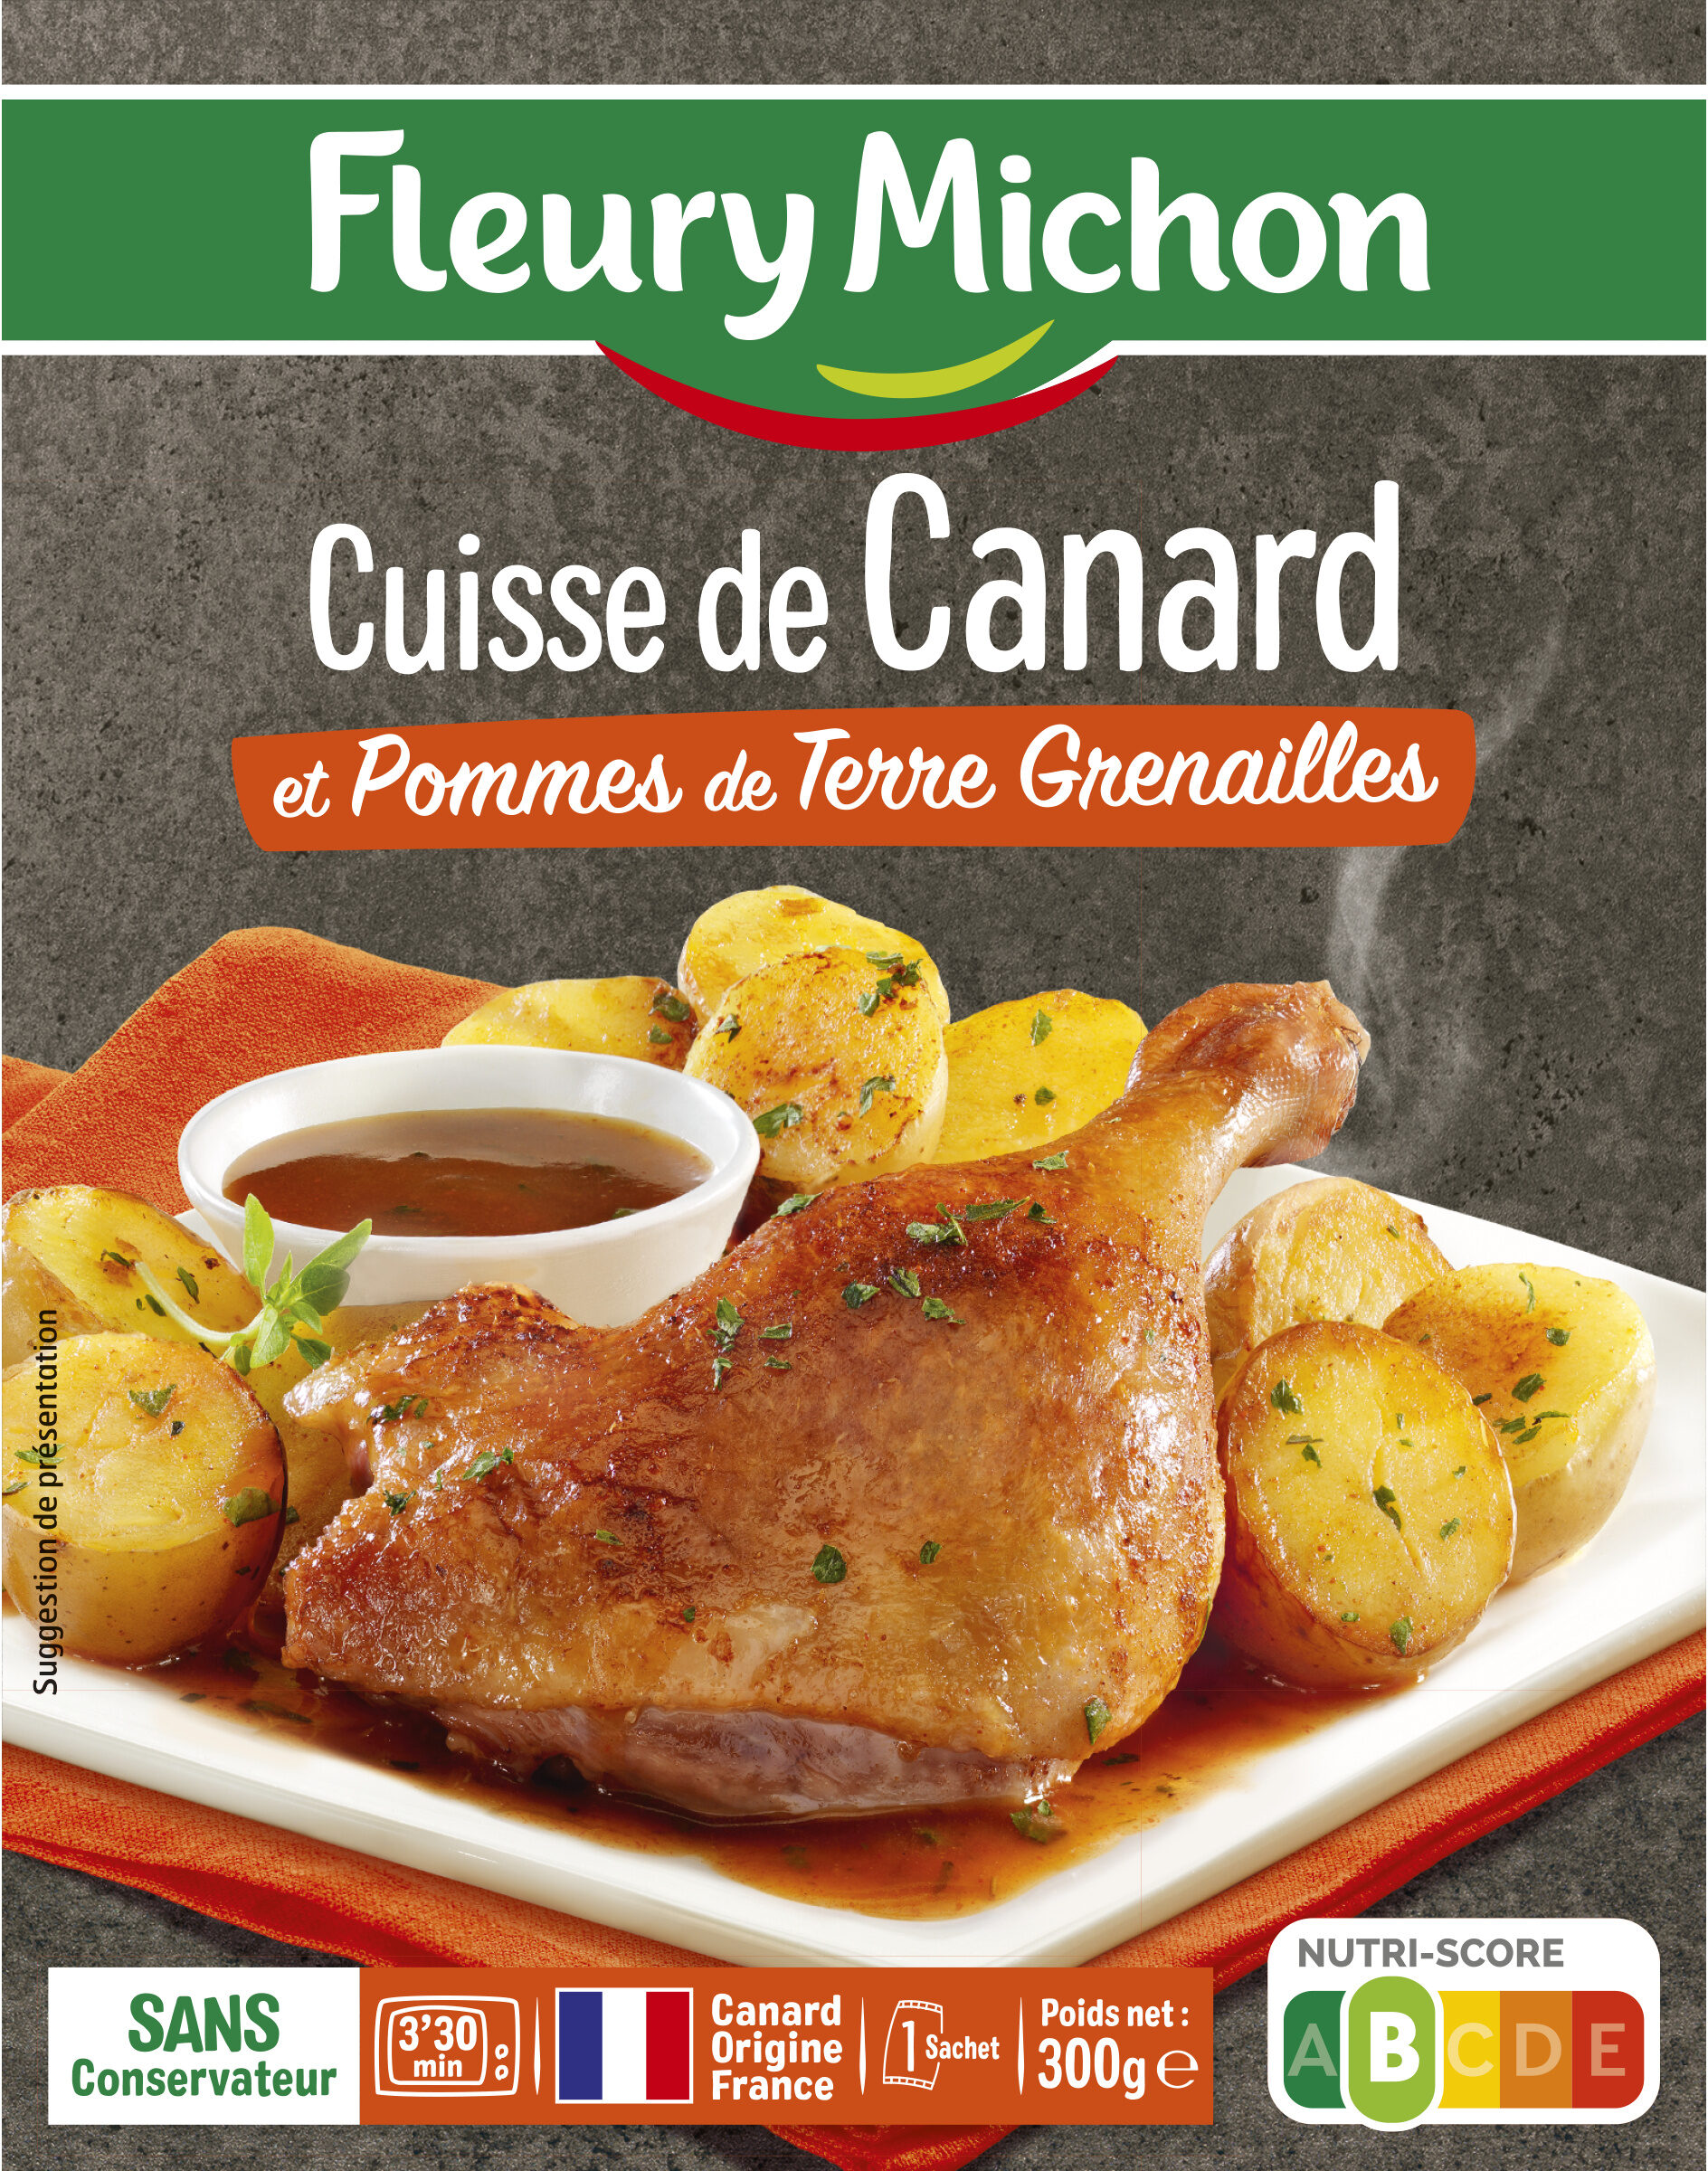 Cuisse de Canard et Pommes de Terre Grenailles - Product - fr